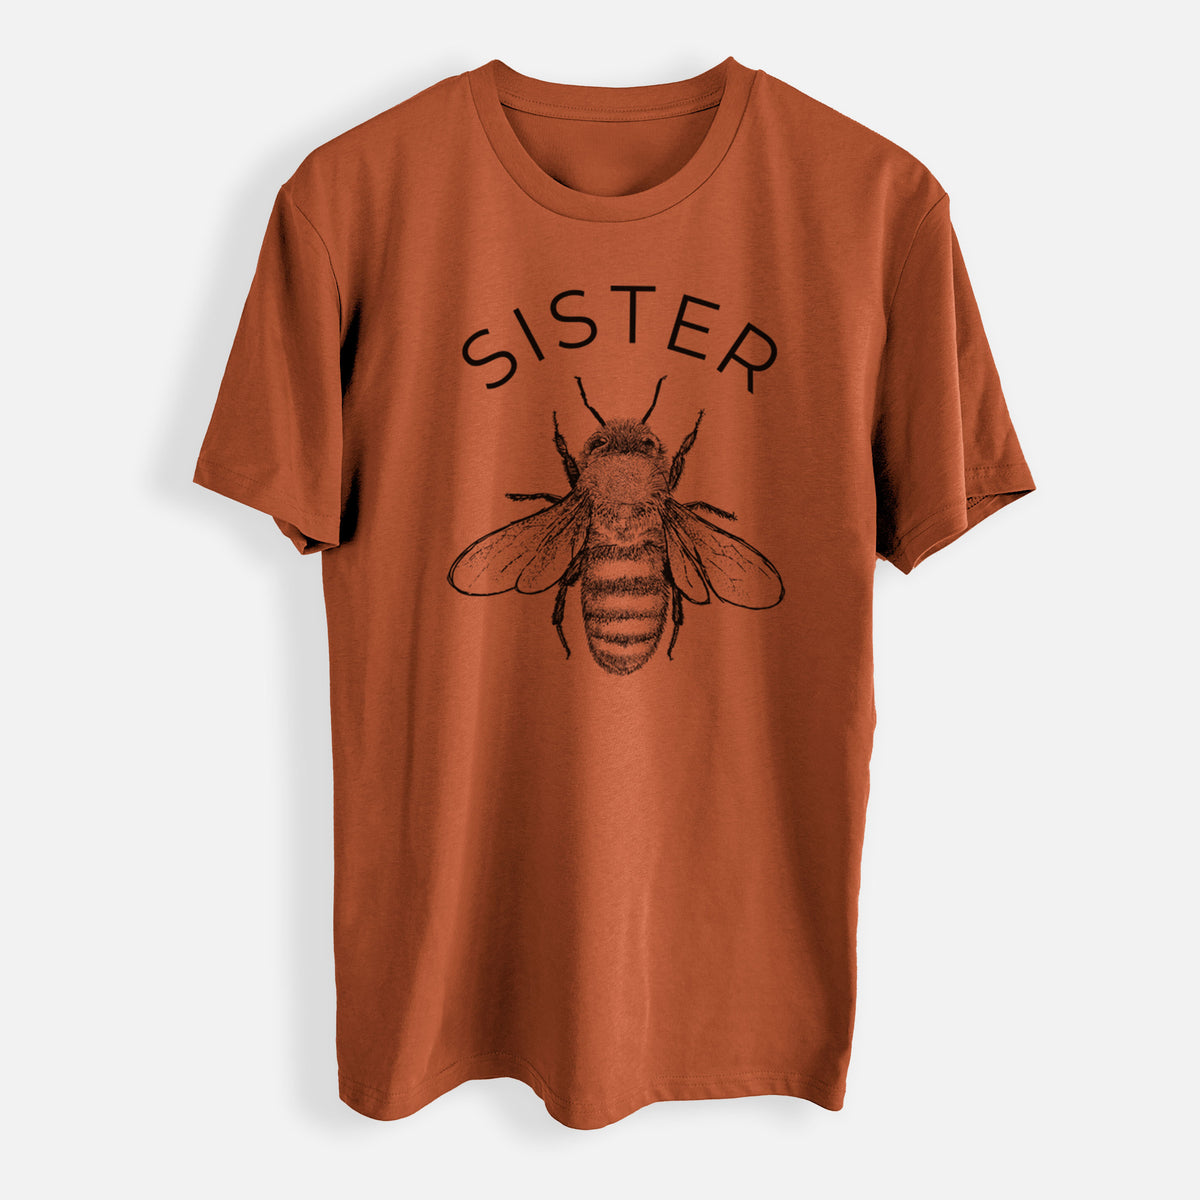 Sister Bee - Mens Everyday Staple Tee